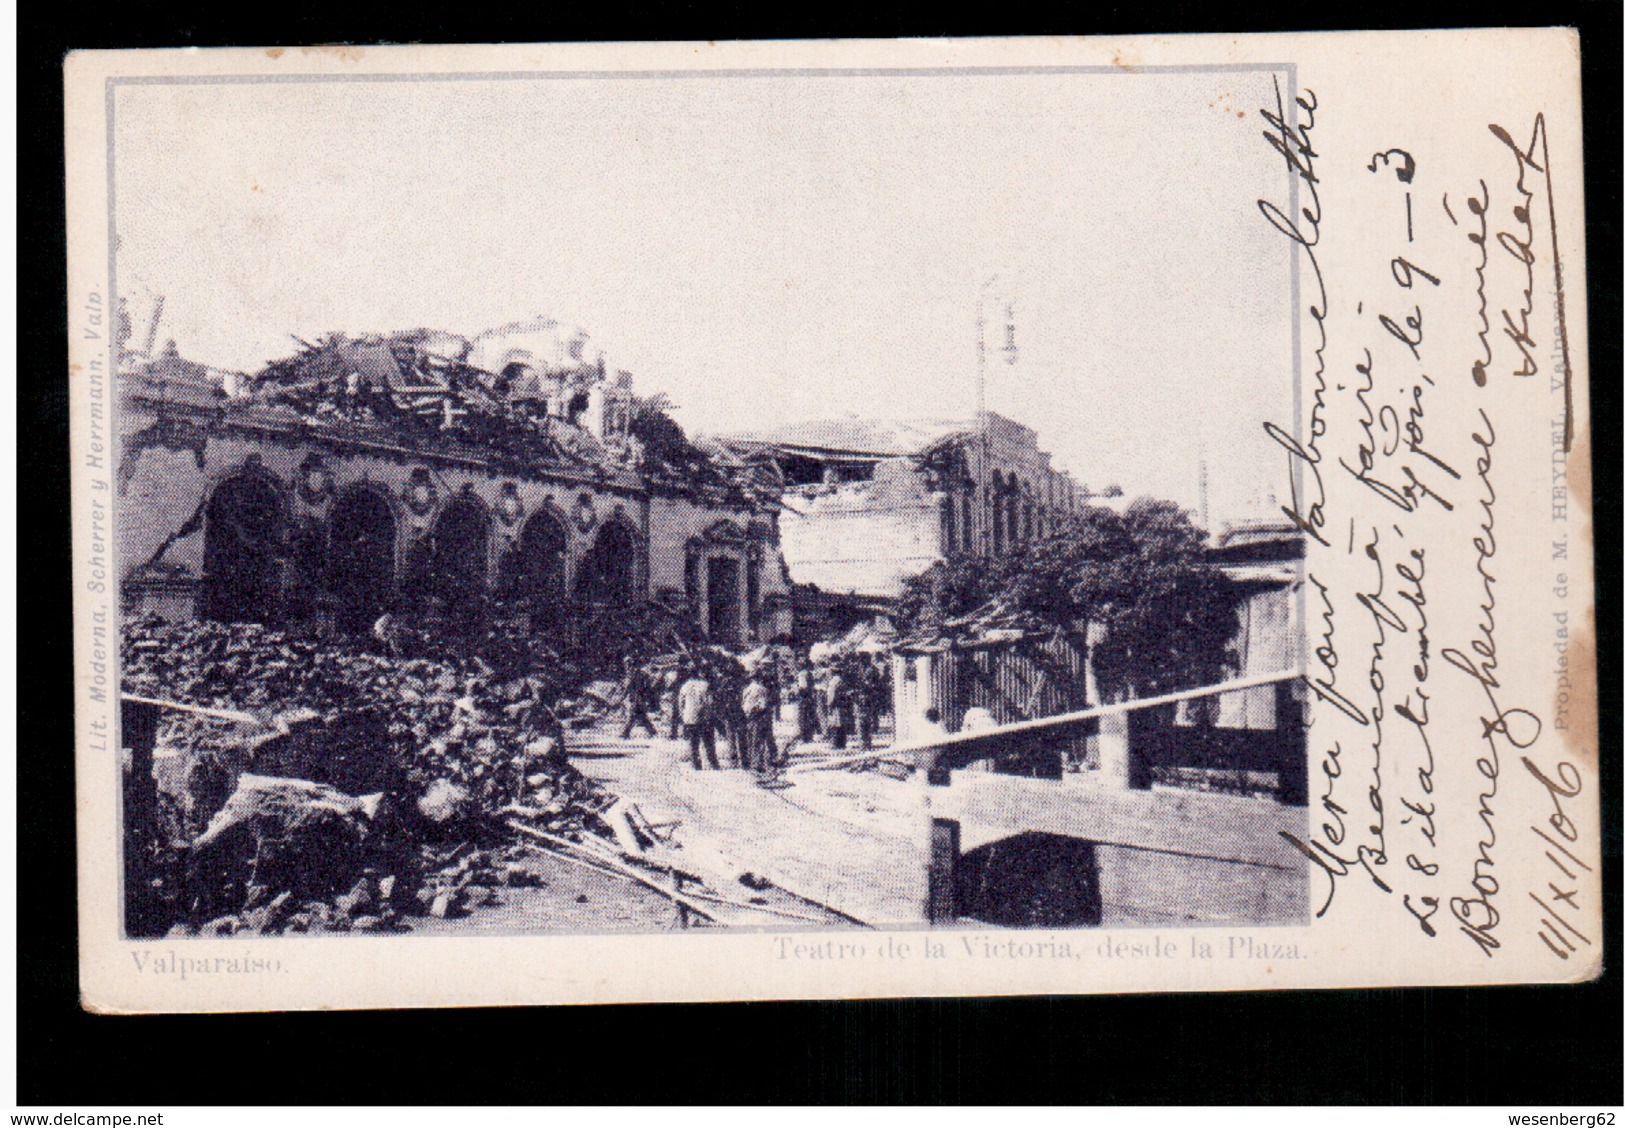 CHILE Valparaiso Teatro De La Victoria Desde La Plaza 1906 OLD POSTCARD 2 Scans - Cile